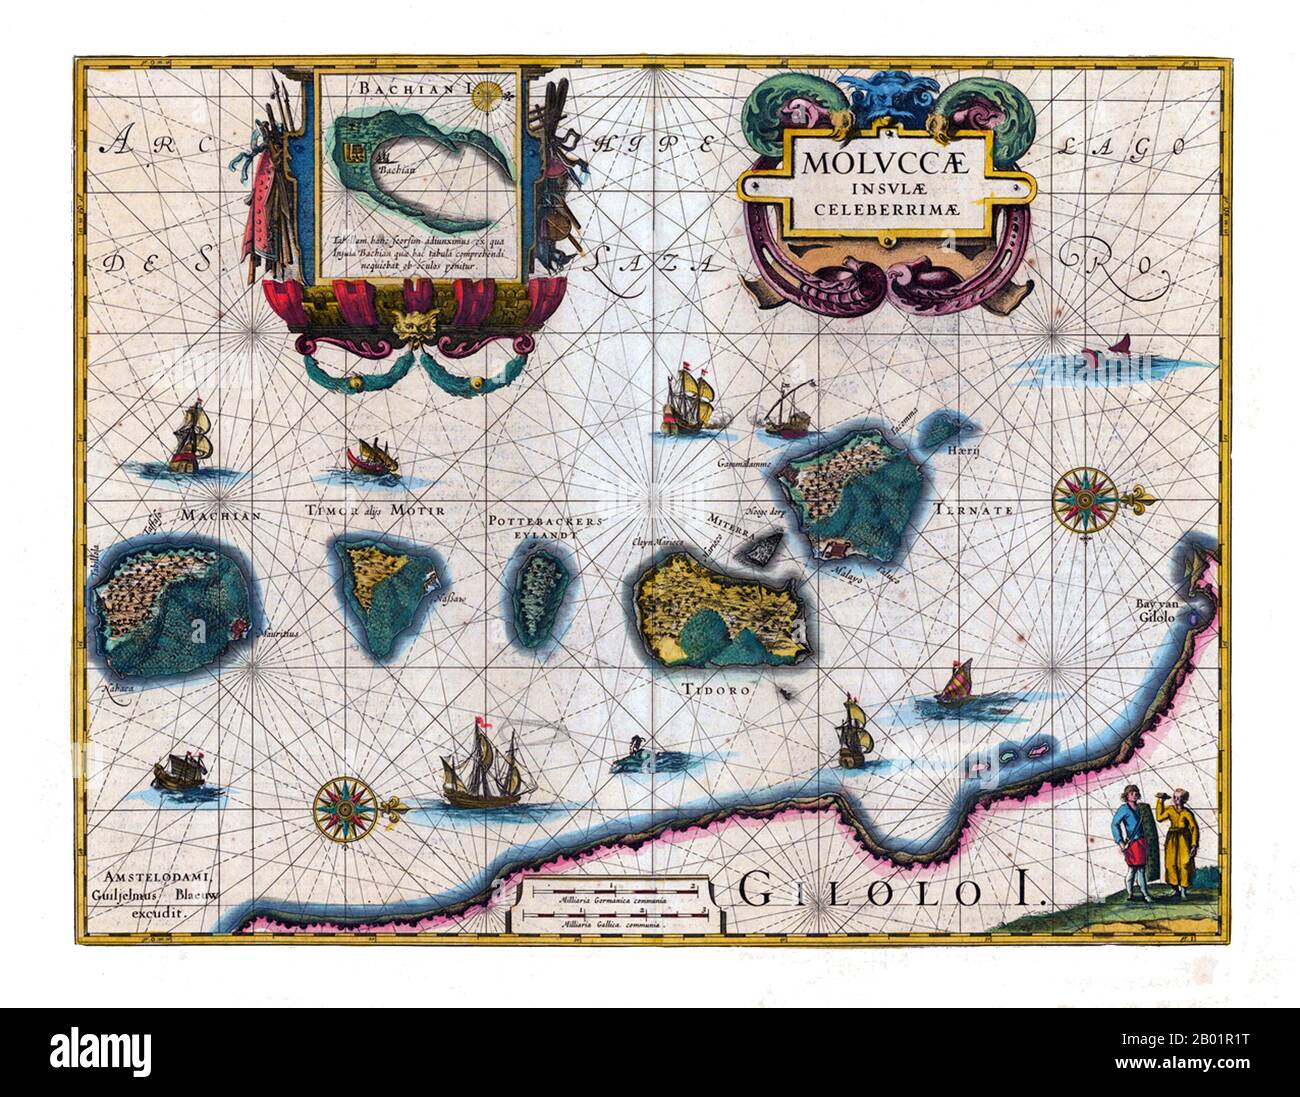 Indonesia/Paesi Bassi: Probabilmente la prima mappa pubblicata delle Isole Maluku. Incisione in rame di Jodocus Hondius (17 ottobre 1563 - 12 febbraio 1612) e trovata nell'Appendice dell'Atlante di Willem Blaeu (1571 - 21 ottobre 1638), 1630. Le Isole Maluku (note anche come Molucche, Molucche e Spice Islands) sono un arcipelago che fa parte dell'Indonesia e della più grande regione marittima del Sud-est asiatico. Tettonicamente si trovano sulla placca di Halmahera all'interno della Molucca Sea Collision zone. Geograficamente si trovano ad est di Sulawesi (Celebes) e ad ovest della nuova Guinea. Foto Stock